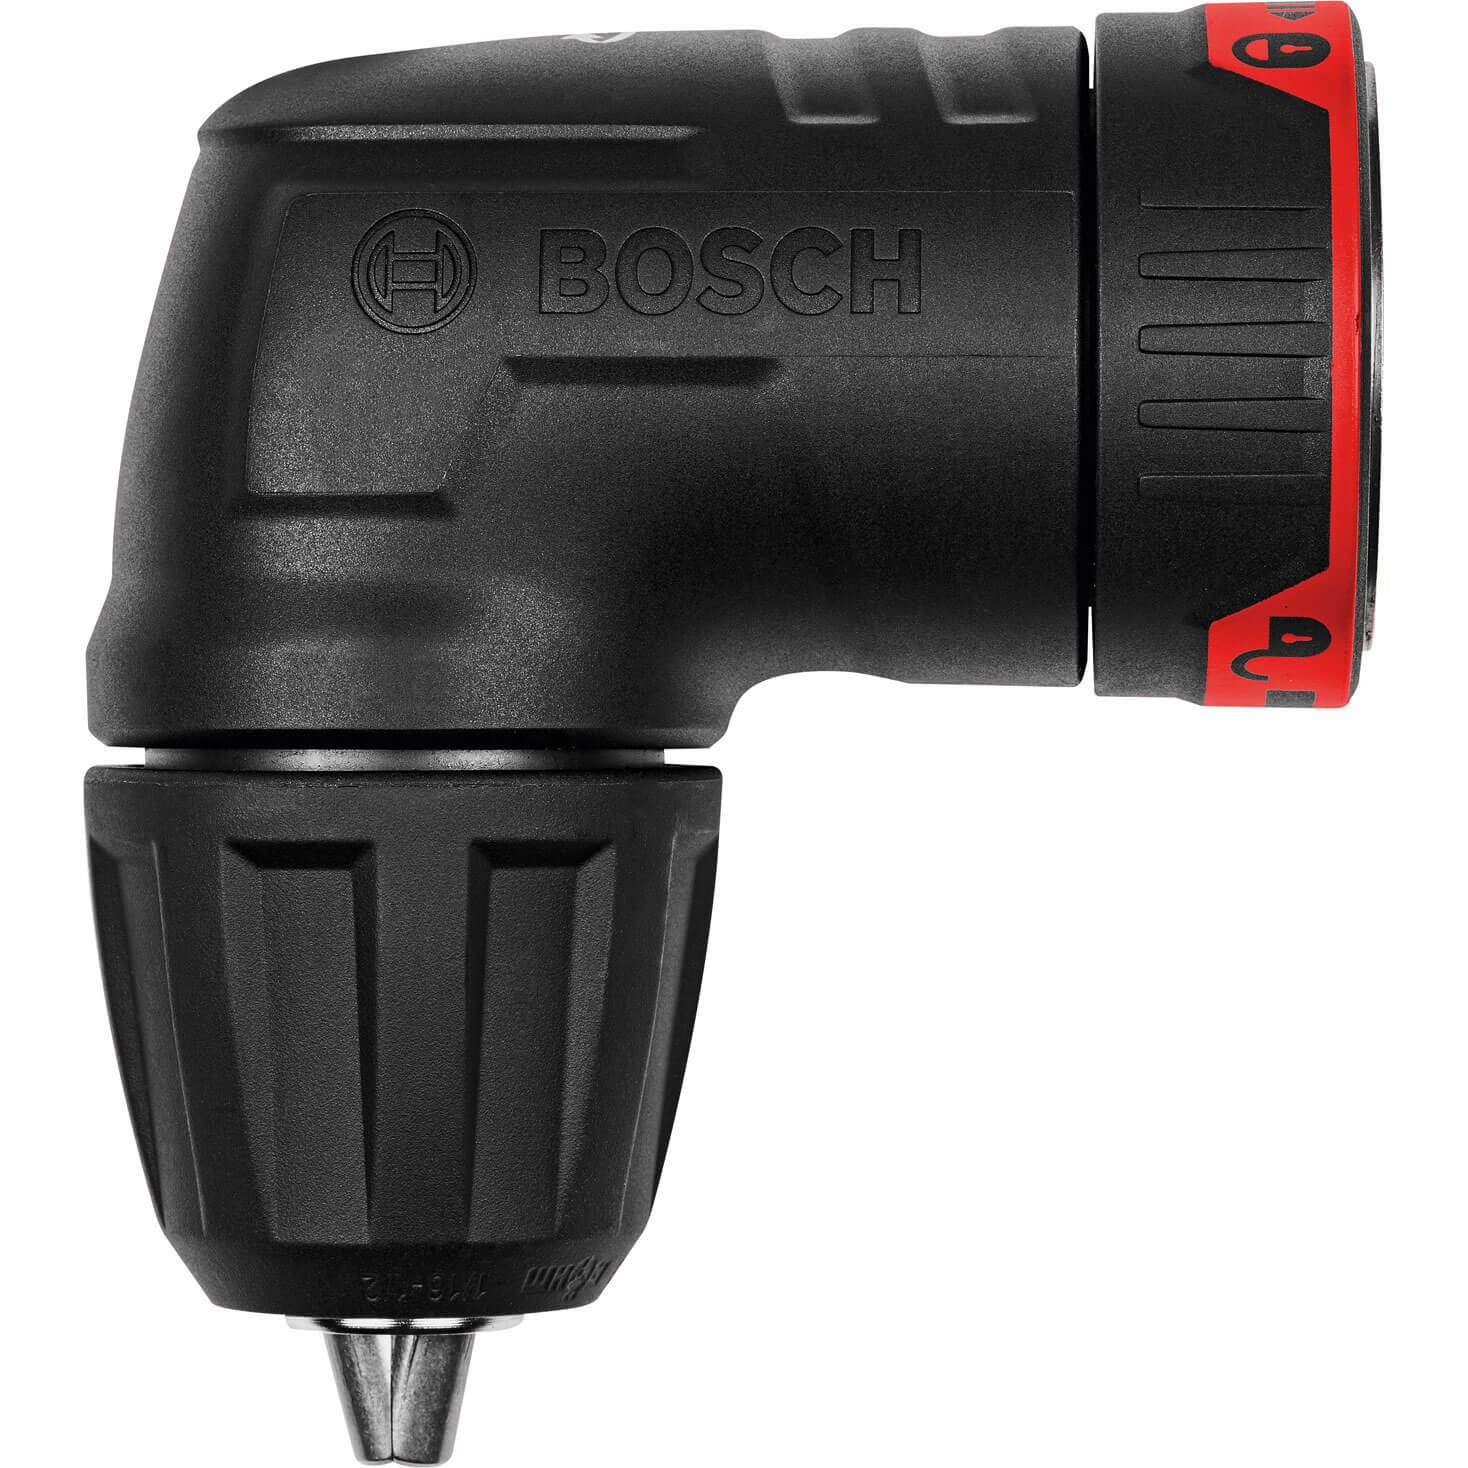 Photo of Bosch Gwa Fc2 Flexiclick Right Angle Drill Attachment